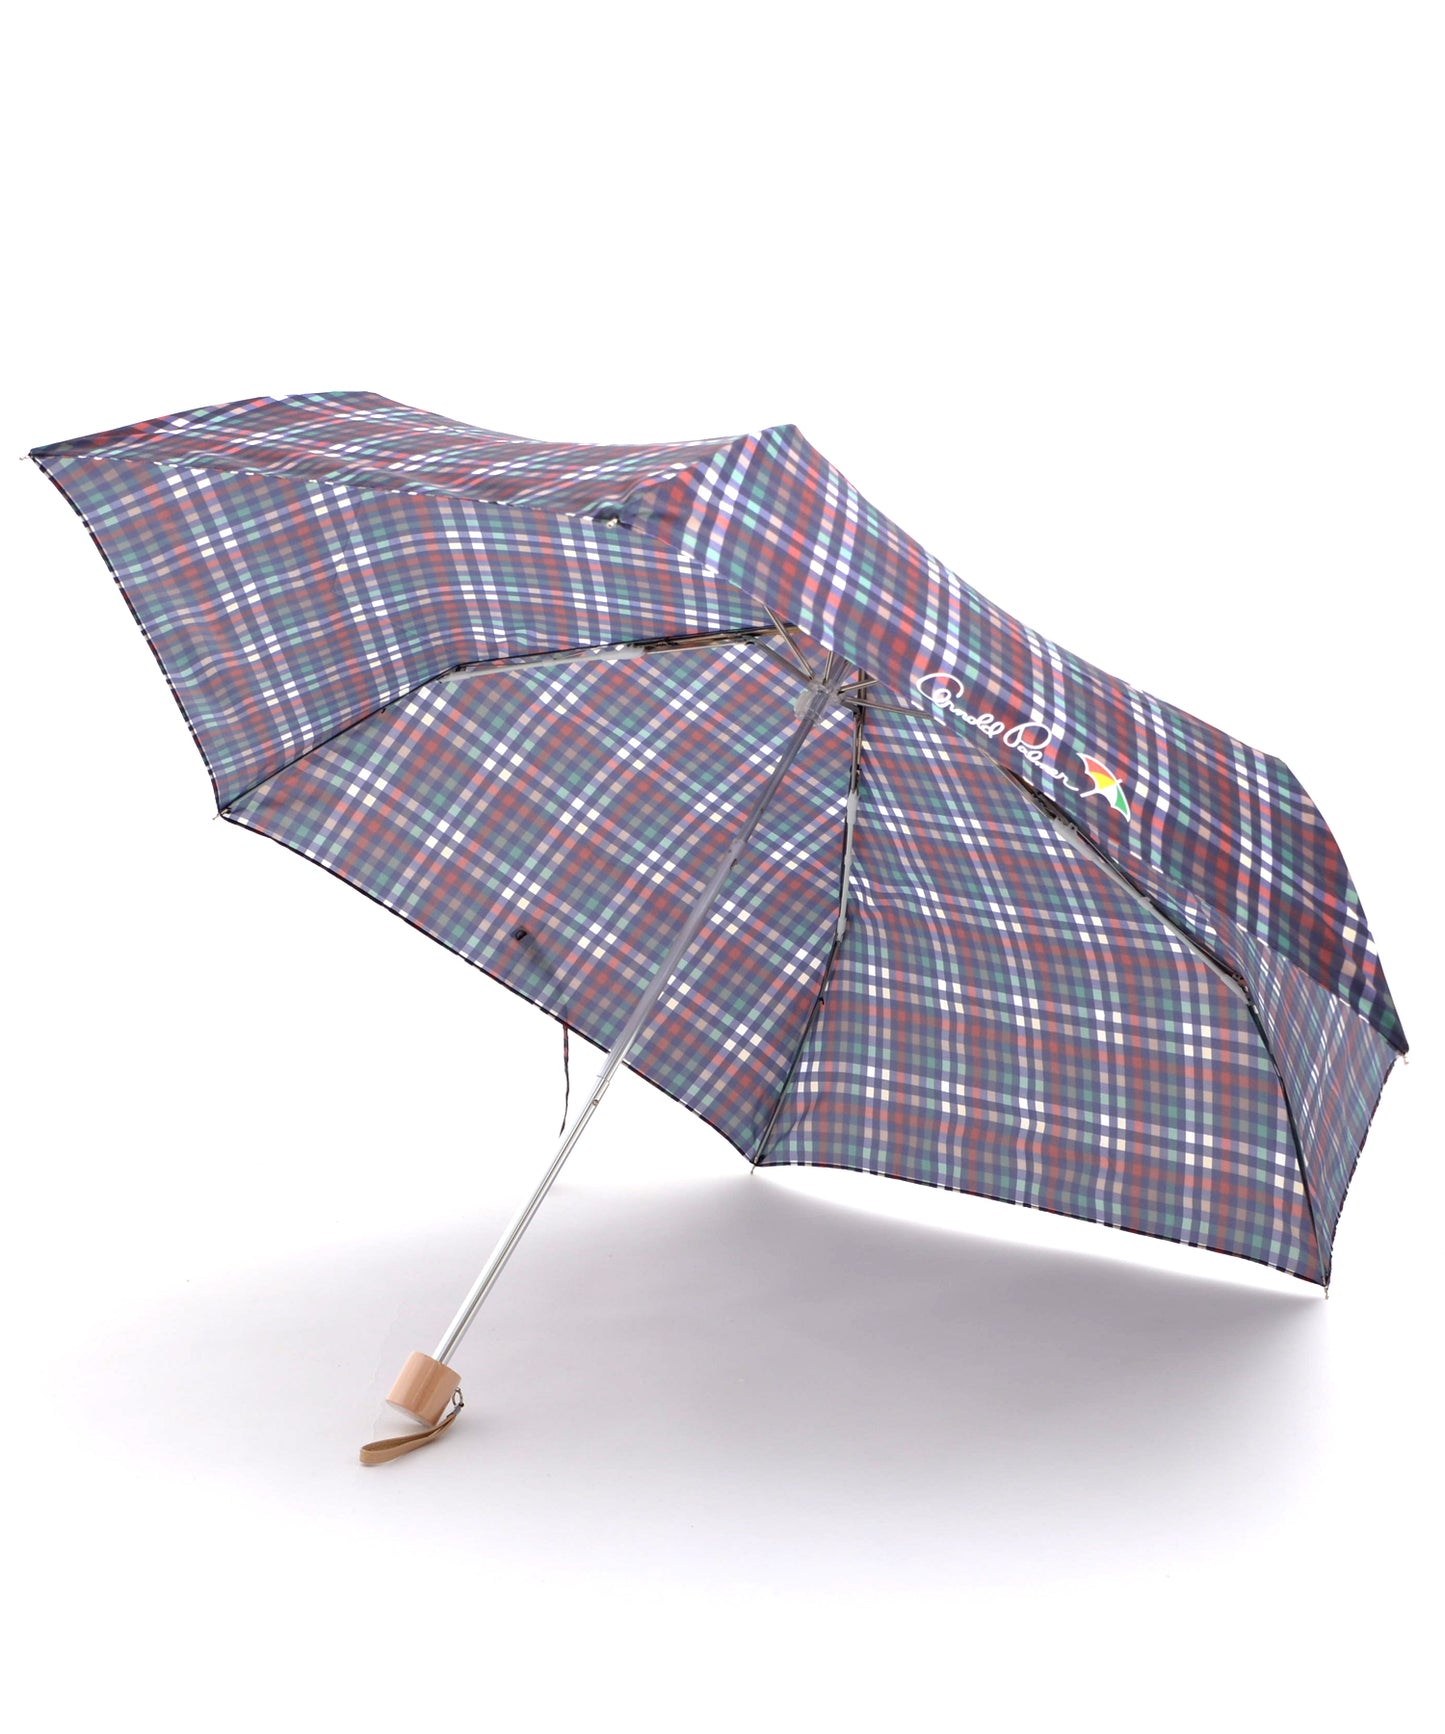 パーマーチェック晴雨兼用シェア折り畳み傘